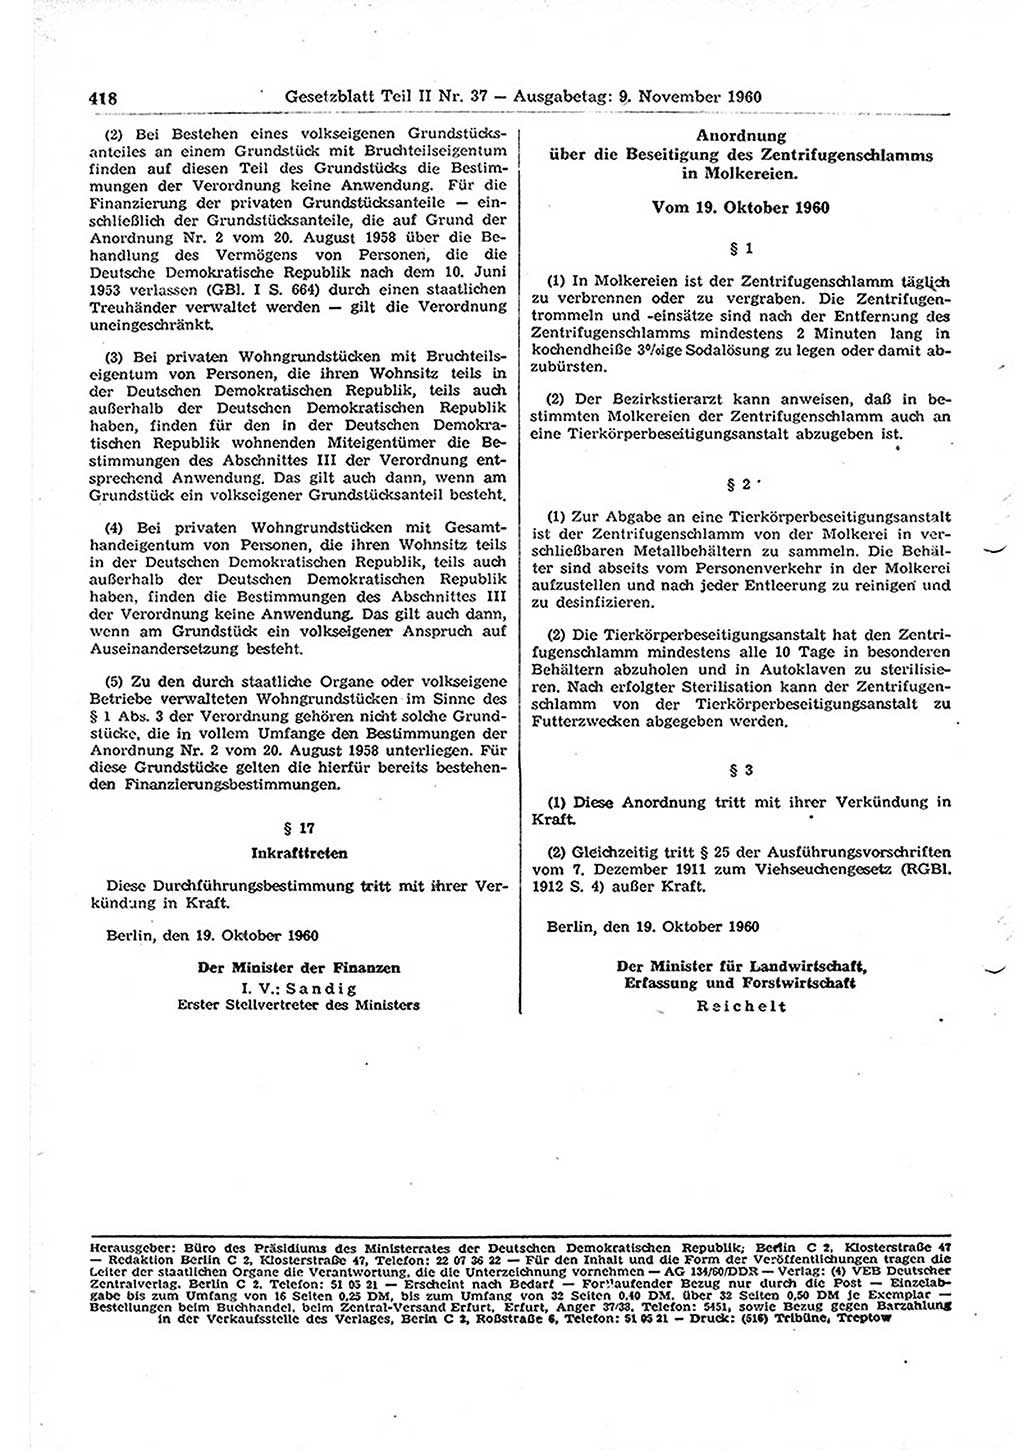 Gesetzblatt (GBl.) der Deutschen Demokratischen Republik (DDR) Teil ⅠⅠ 1960, Seite 418 (GBl. DDR ⅠⅠ 1960, S. 418)